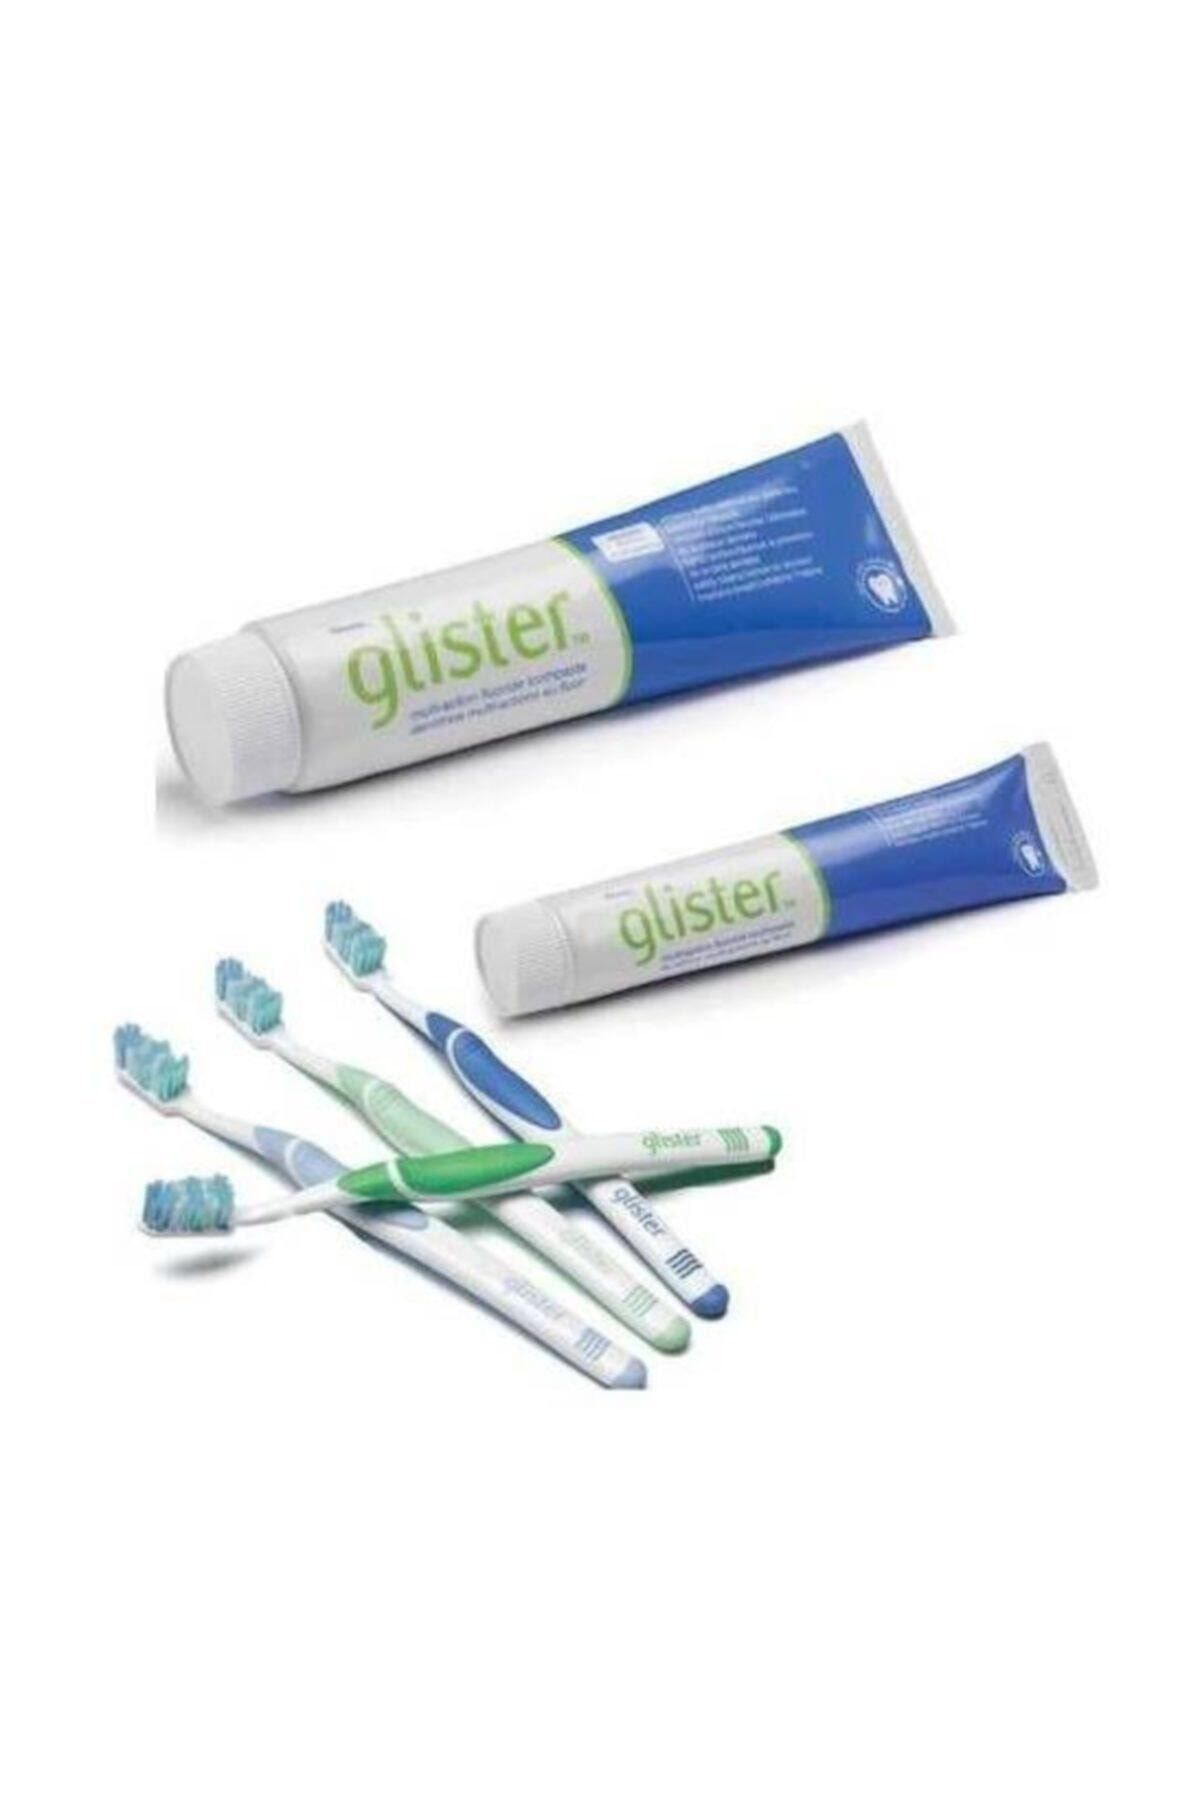 Amway Glister Diş Fırçası, Seyahat 50 ml Diş Macunu -150 ml Diş Macunu Görseldeki Ürünler Gönderiliyor